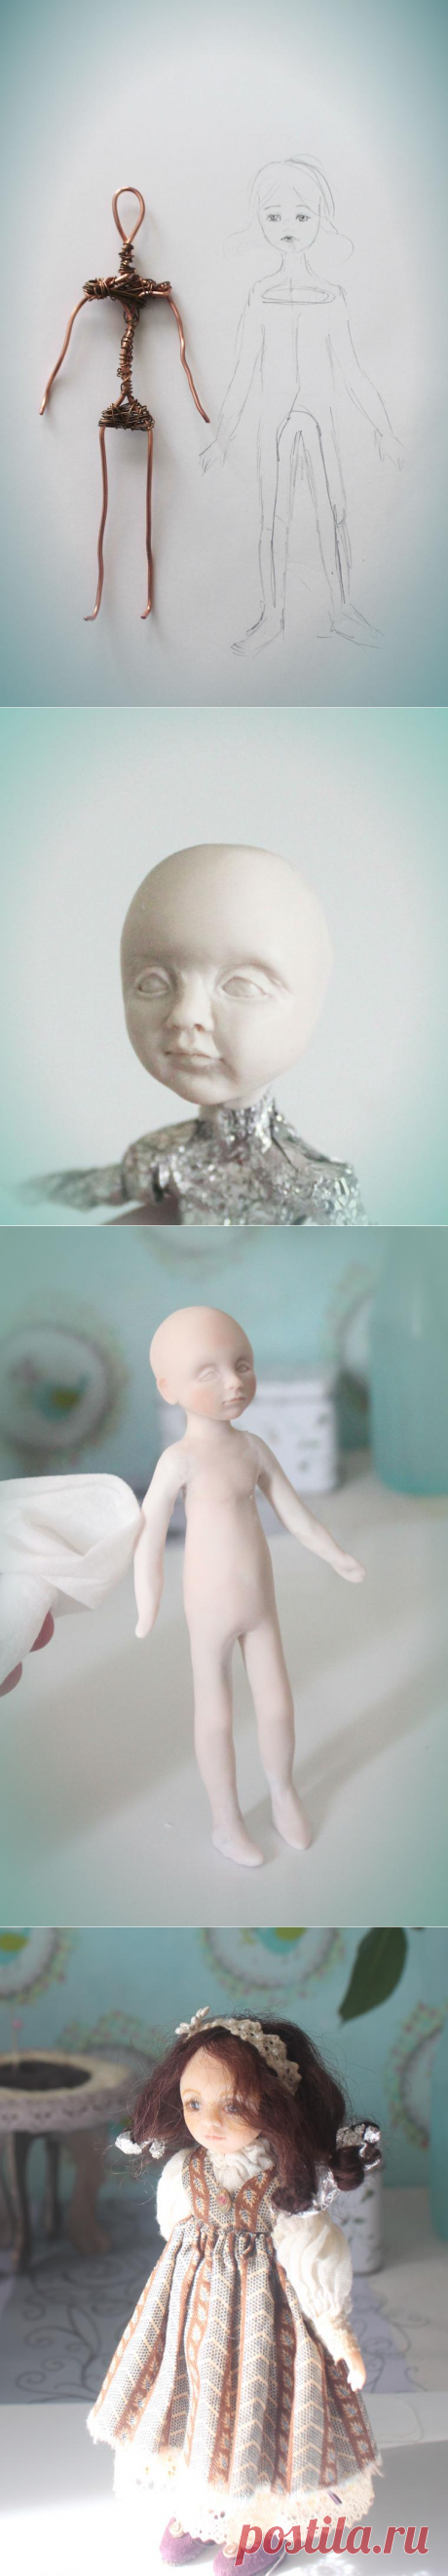 Создаем чудесную куколку из полимерной глины – Ярмарка Мастеров